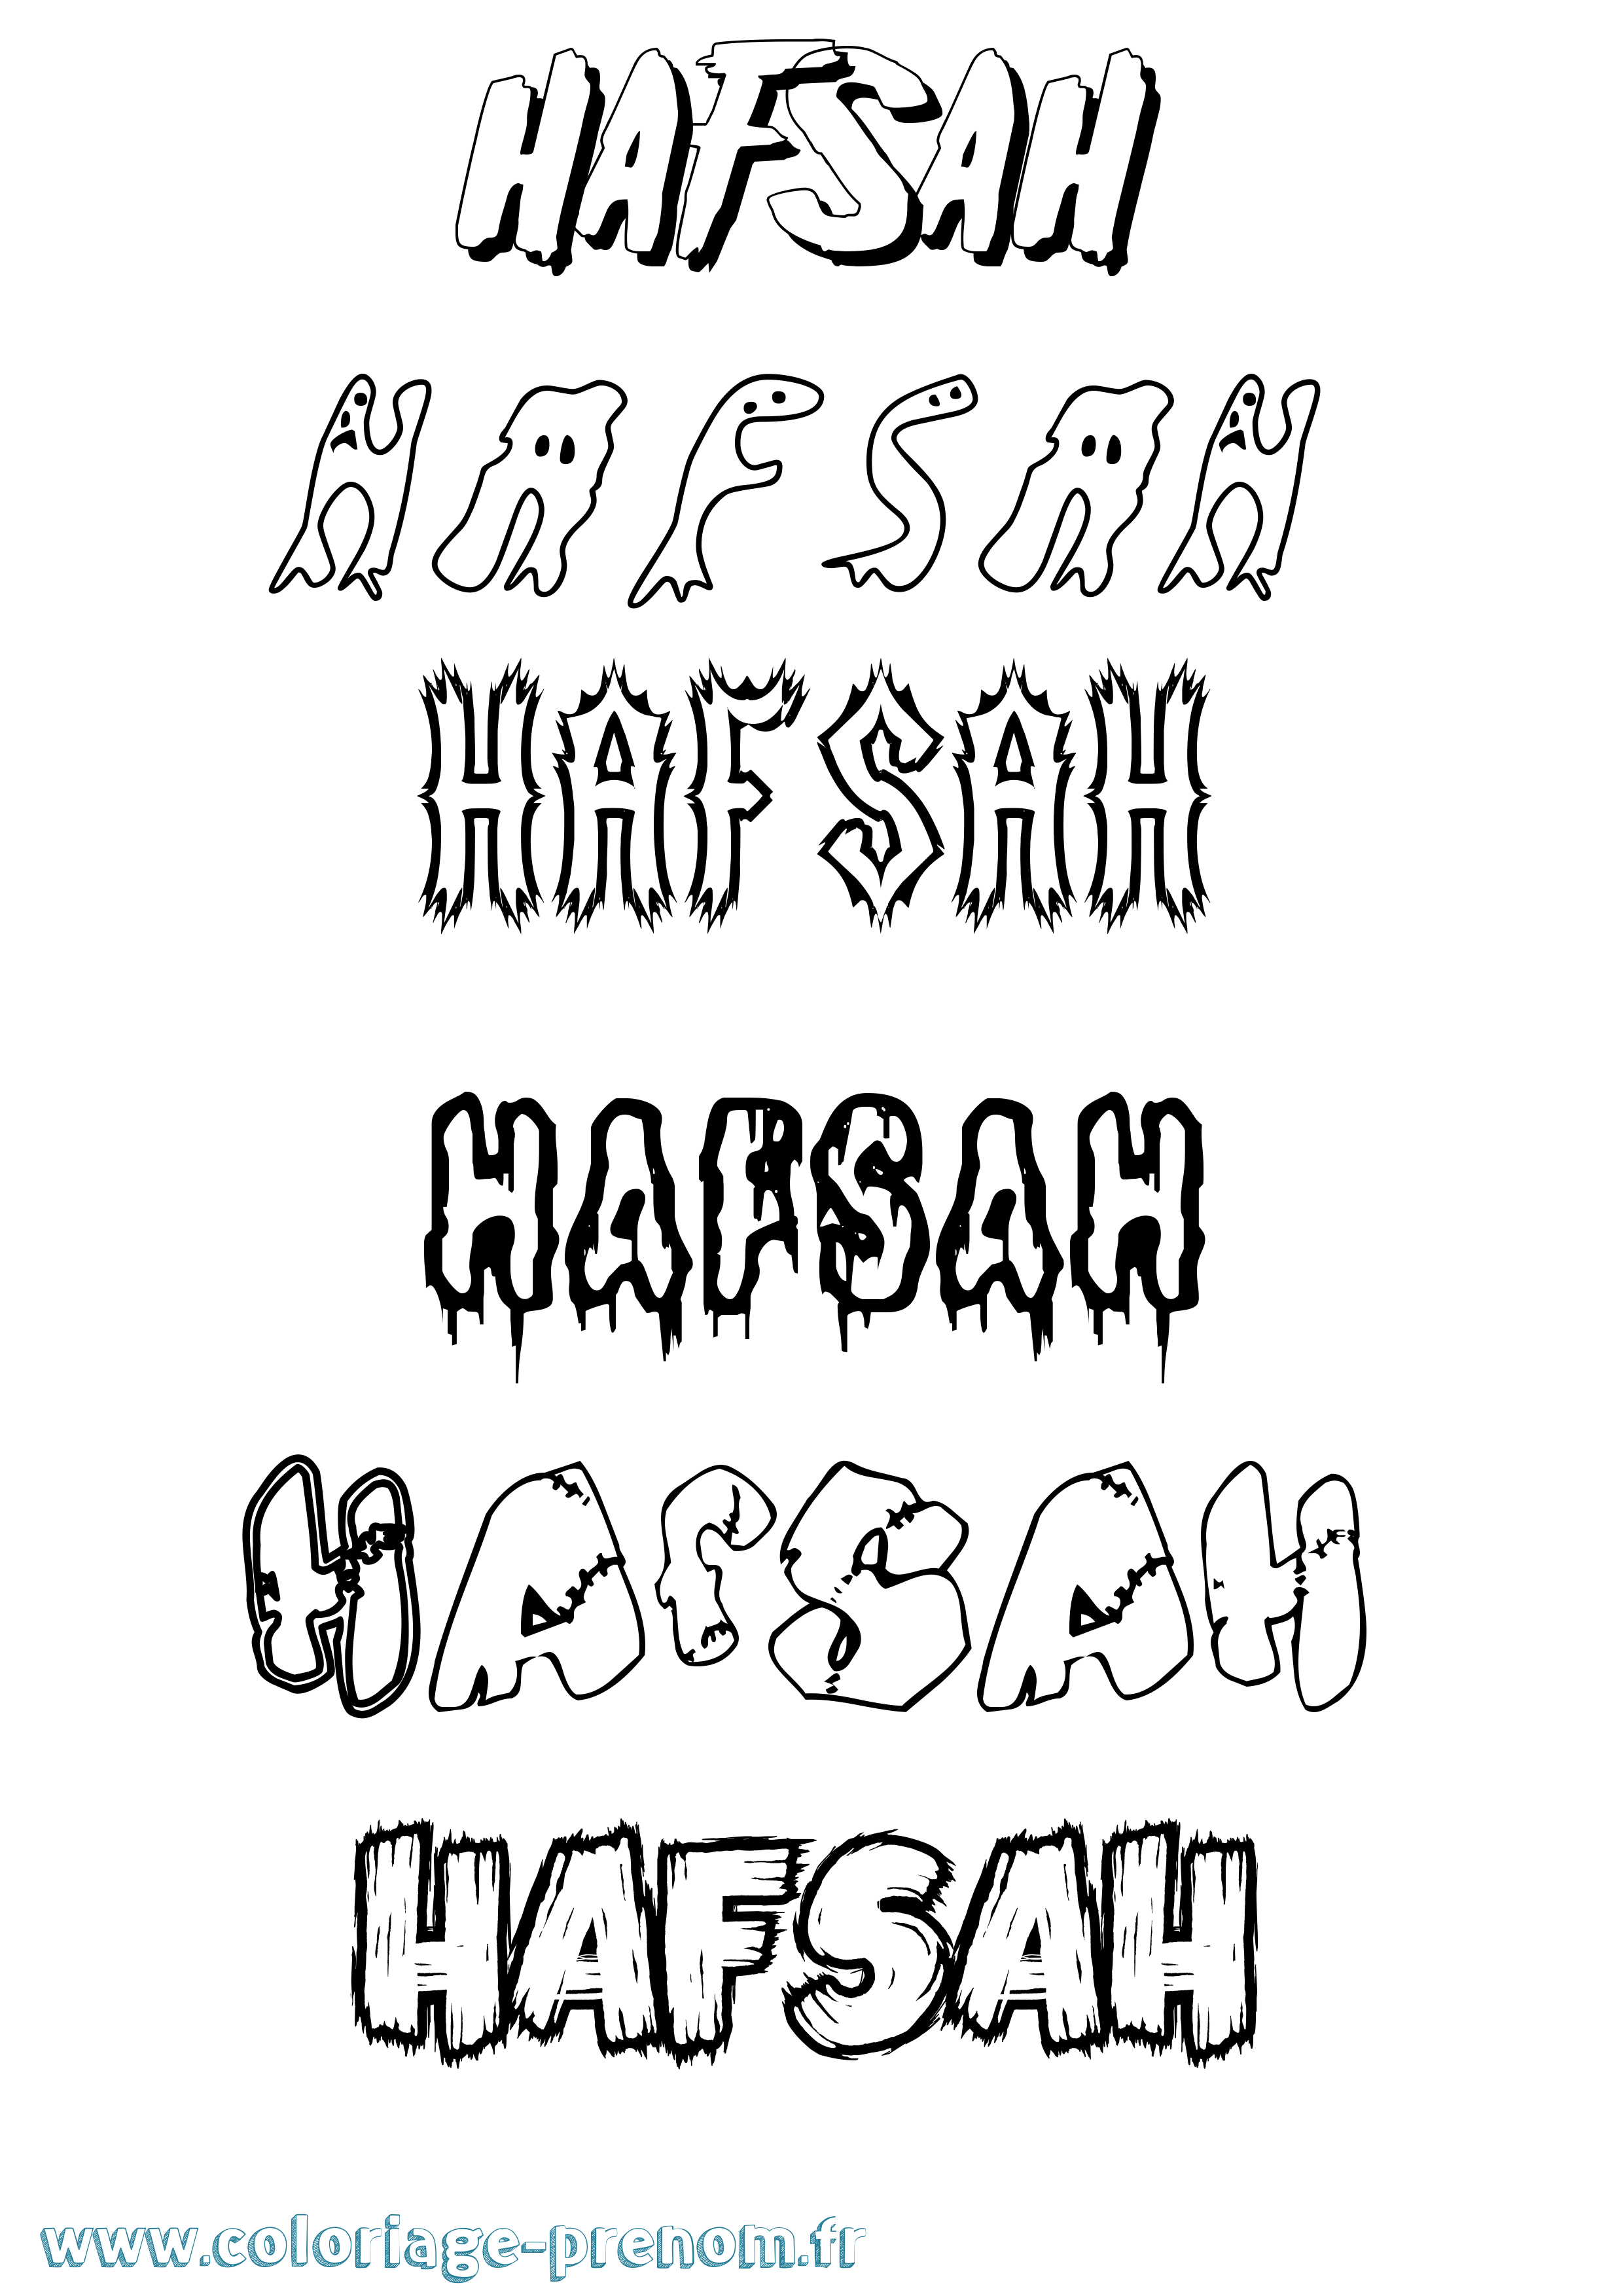 Coloriage prénom Hafsah Frisson